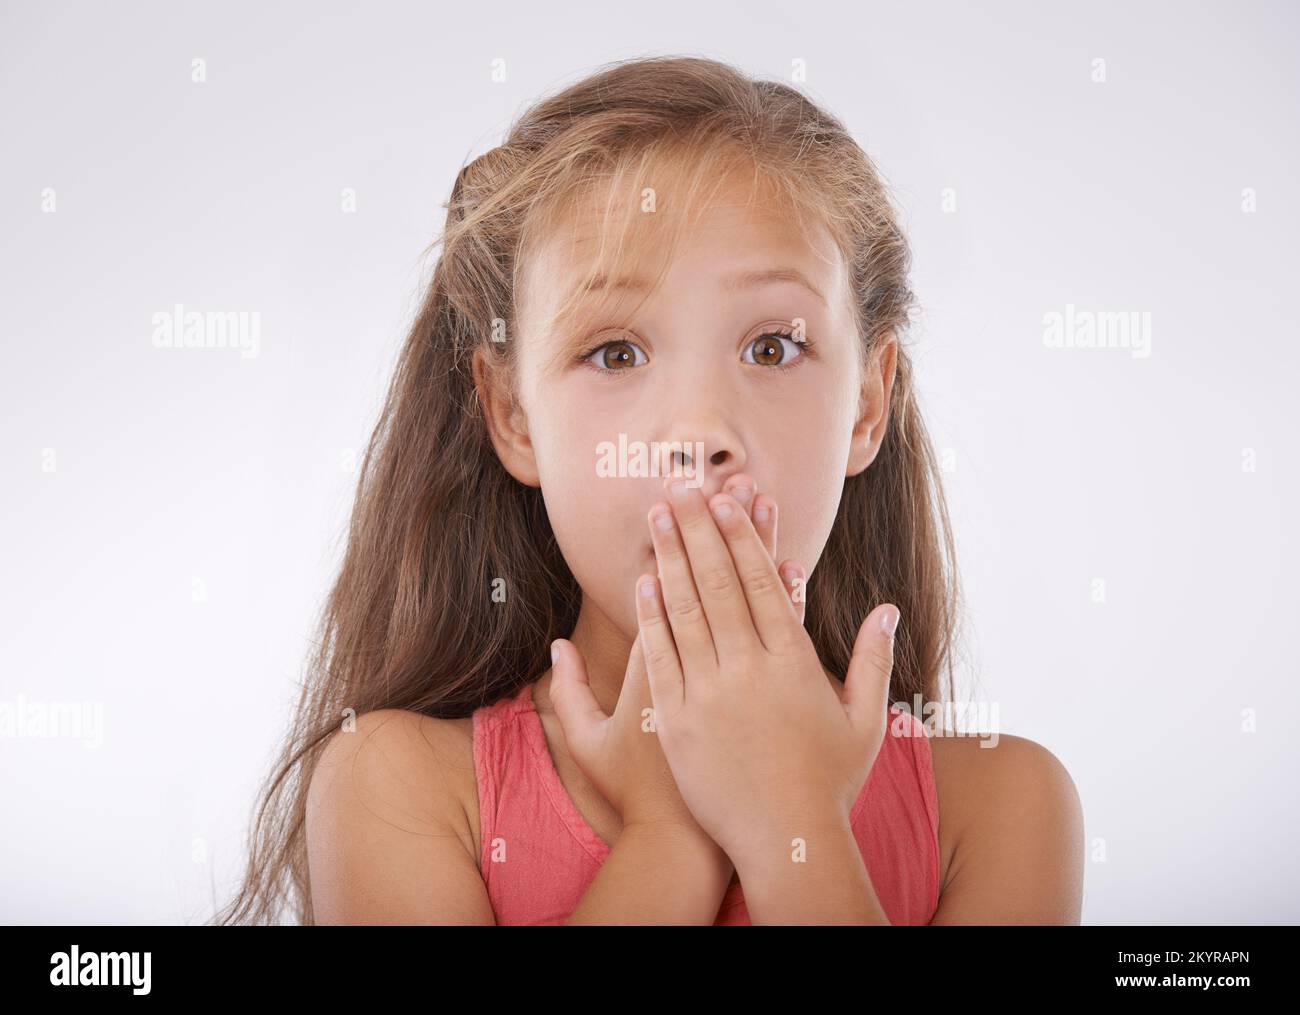 Non può crederlo. Ritratto di una bambina che copre la bocca in incredulità. Foto Stock